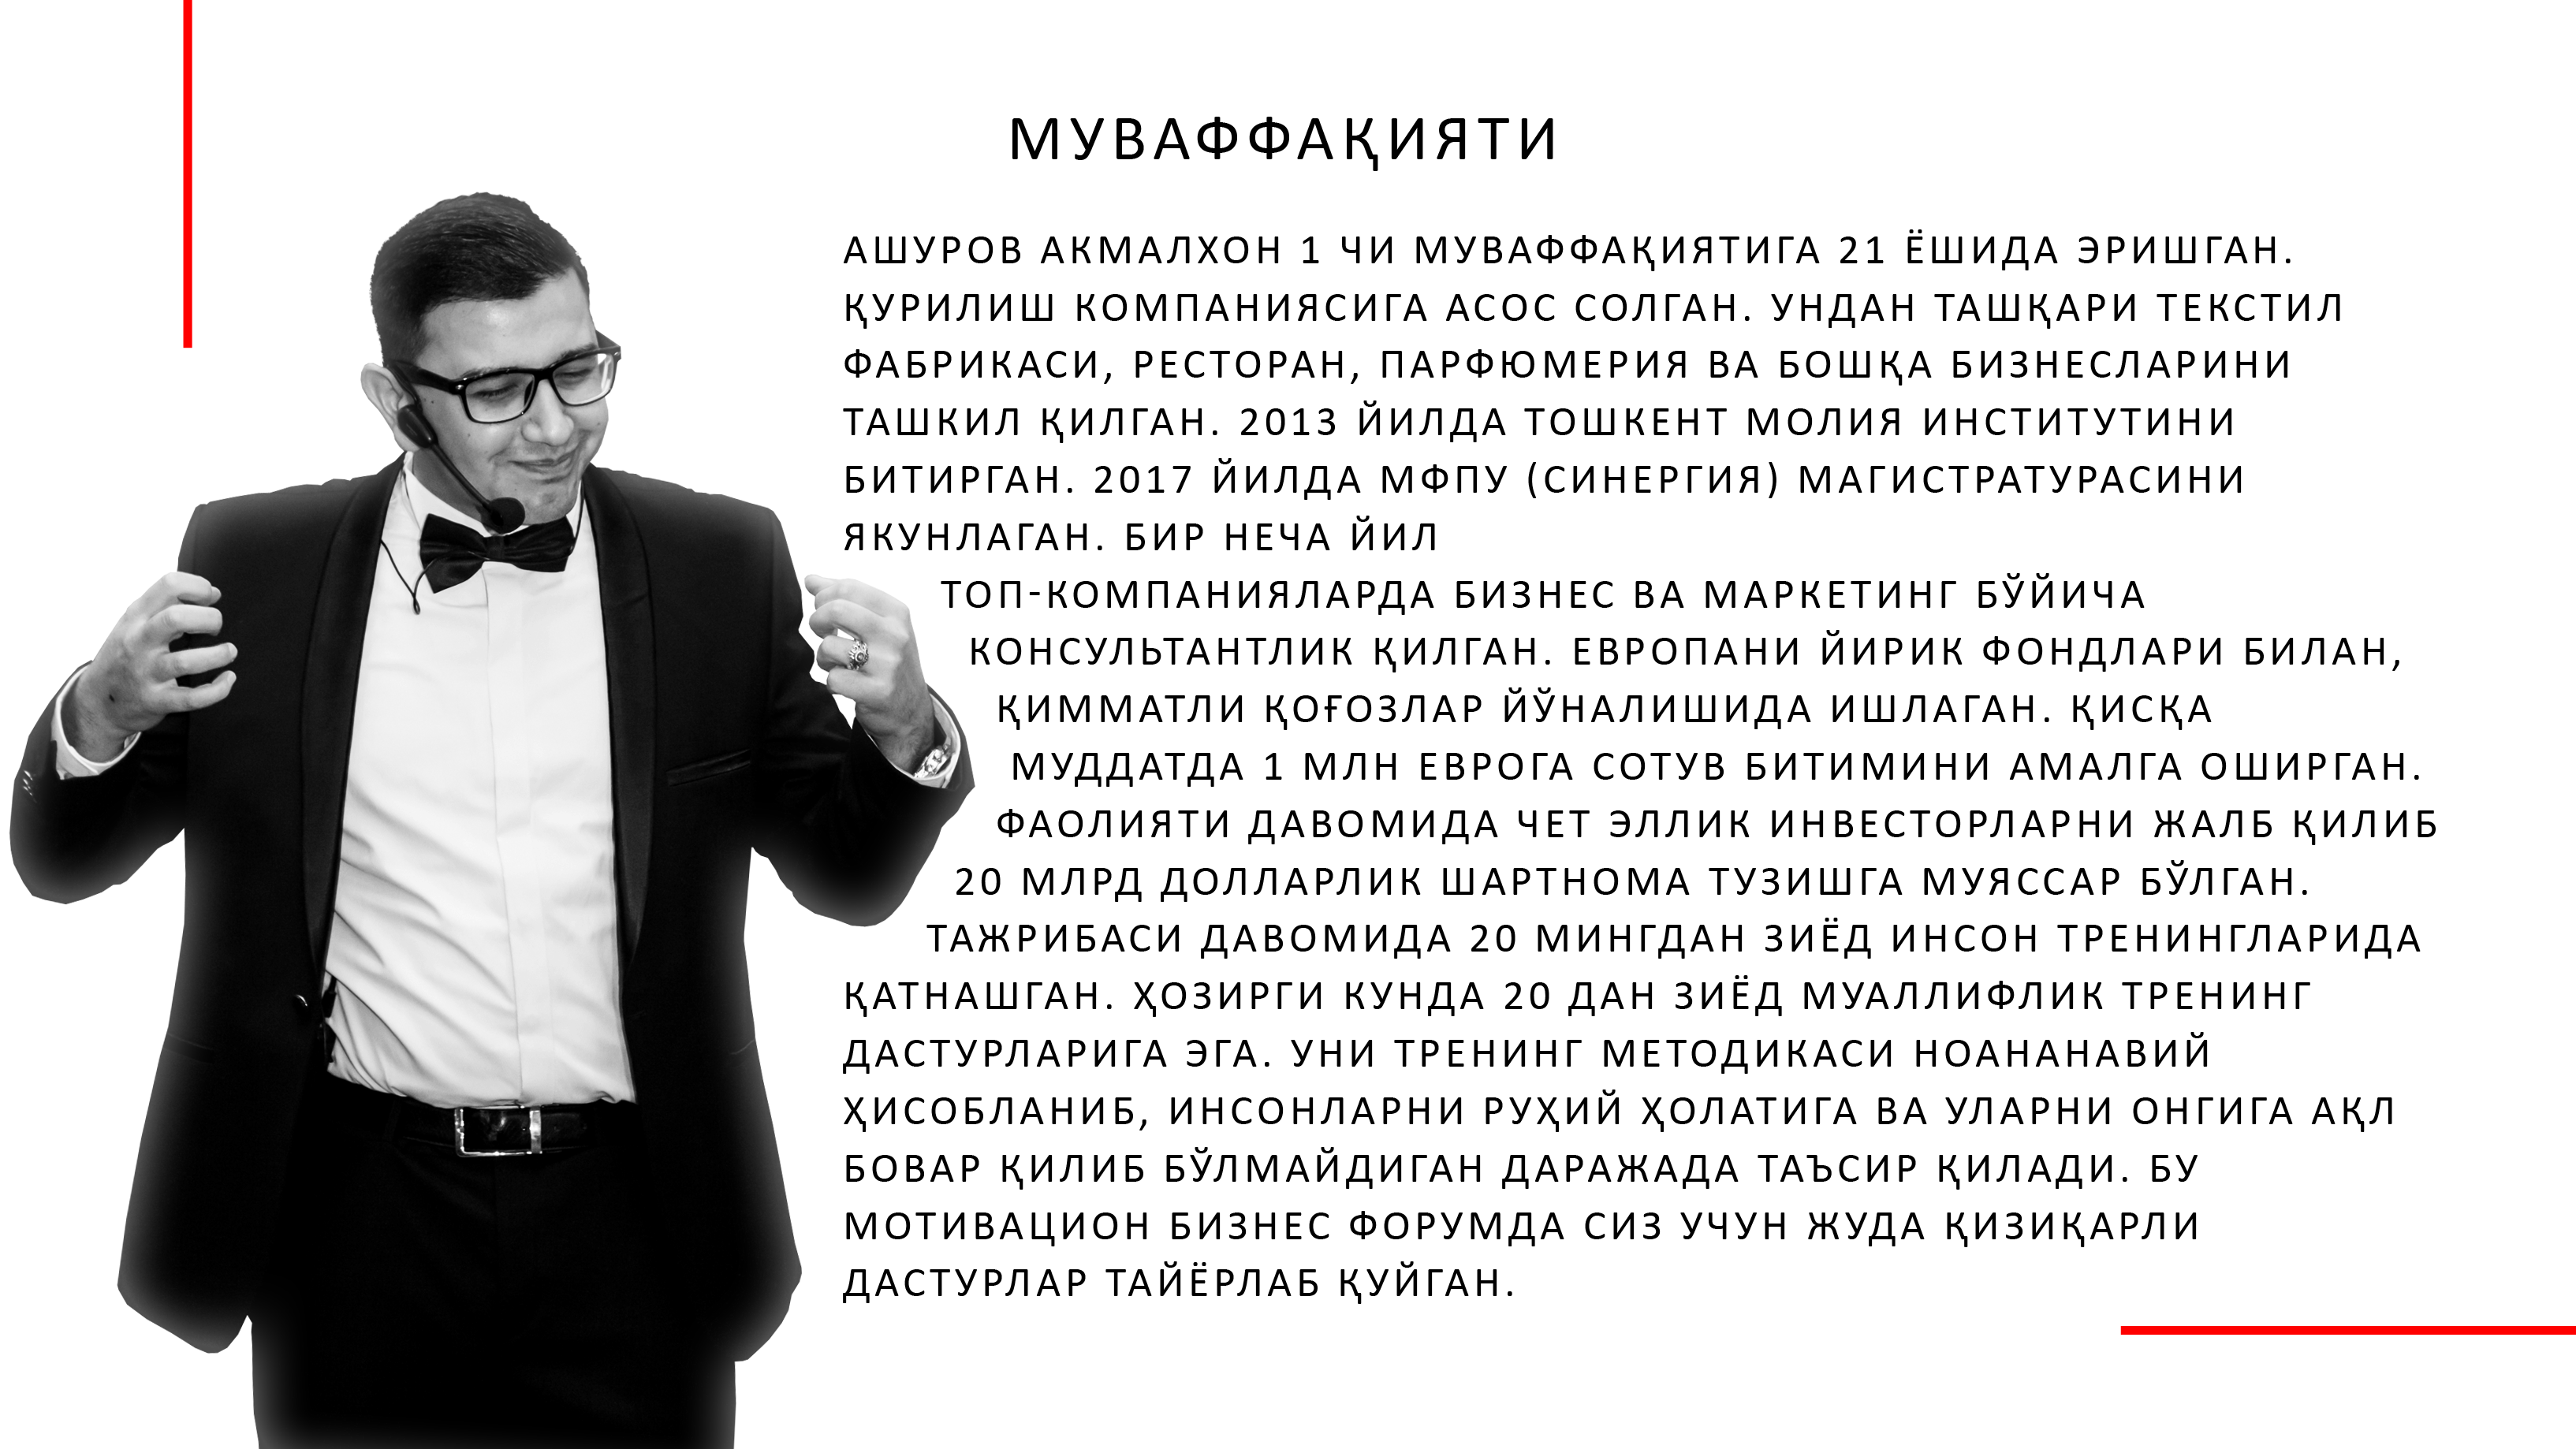 Директор ПБО Ашуров. Ашуров награда